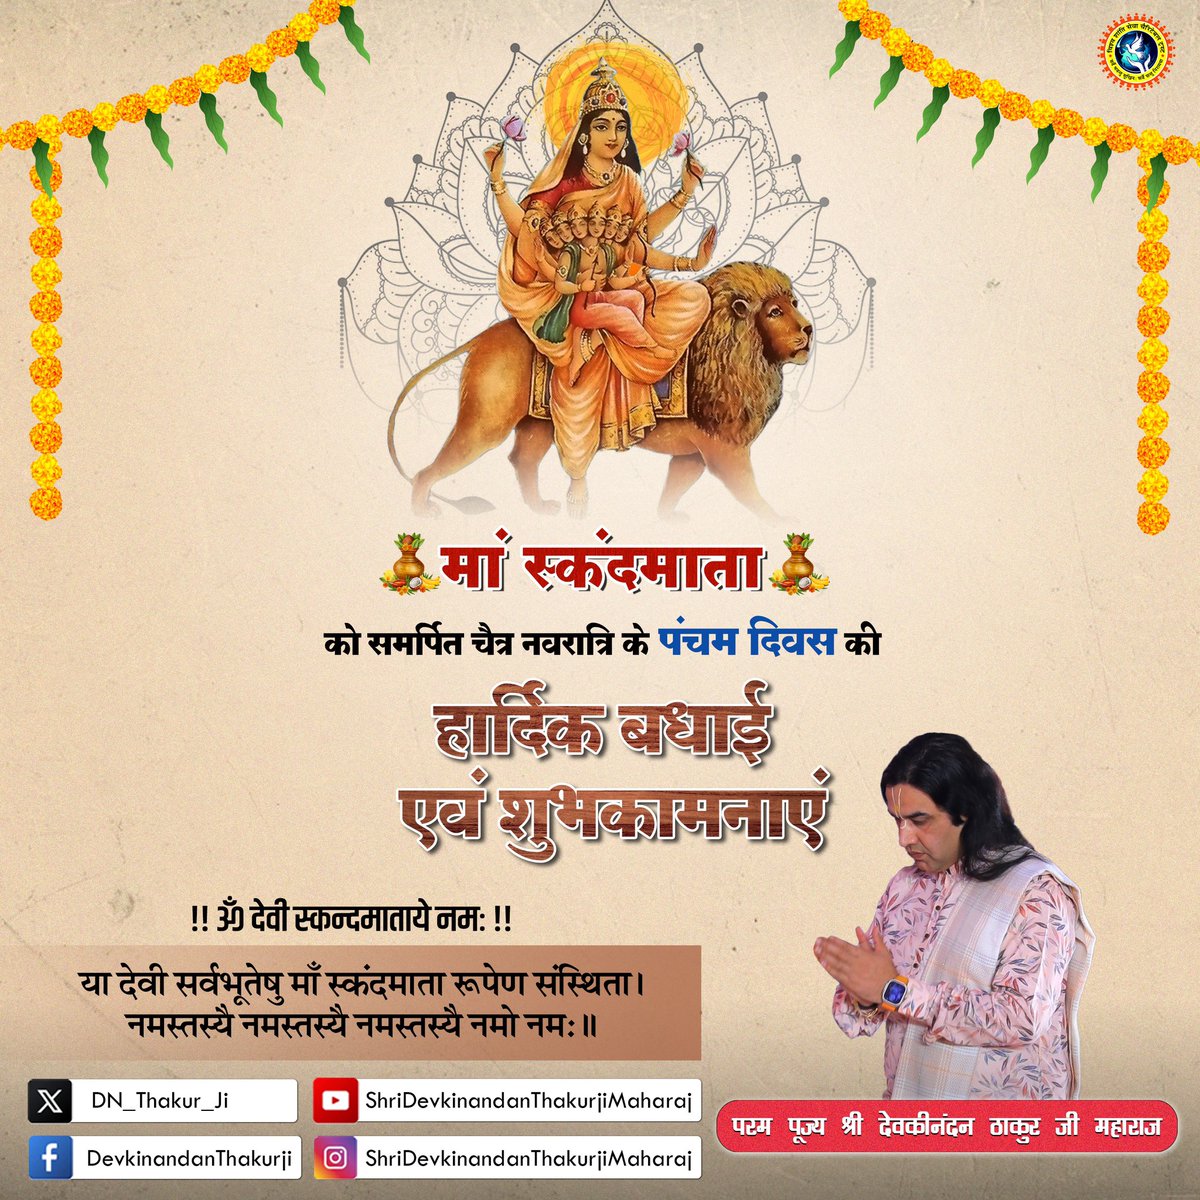 नवरात्रि के पंचम दिवस की सभी सनातनियों को बहुत शुभकामनाएं 🙏🏻 स्कंदमाता का आशीर्वाद सभी भक्तों पर बना रहे.. #Navratri